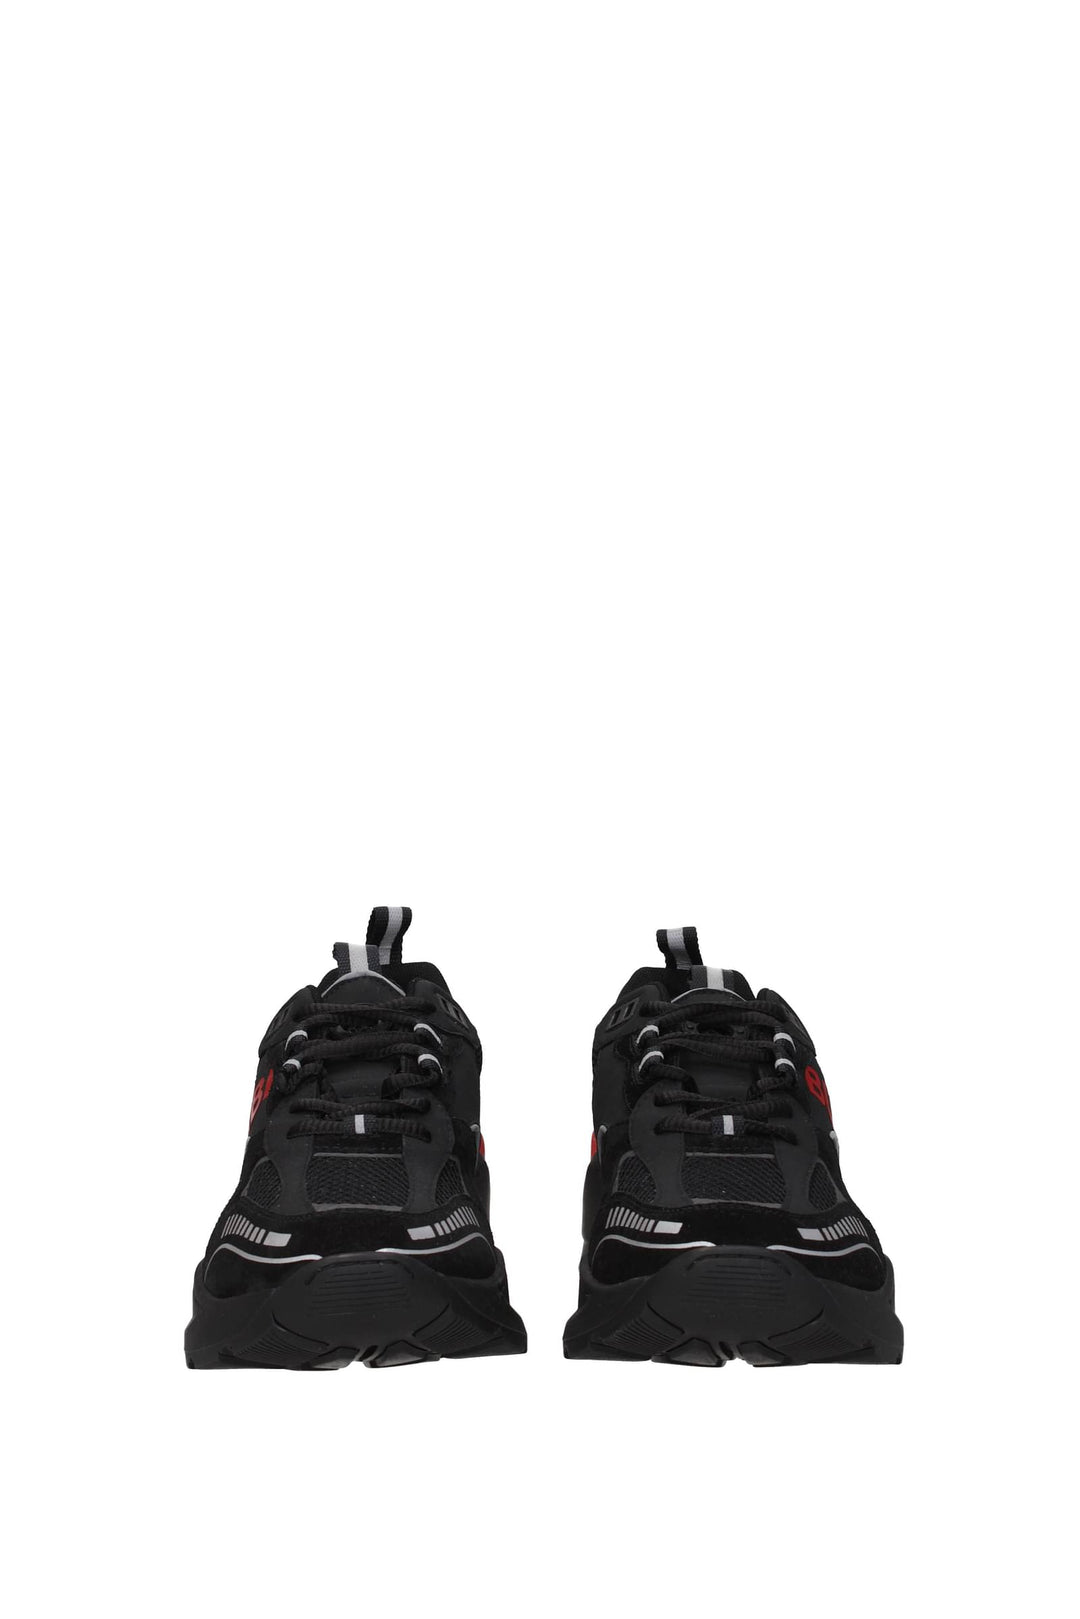 Sneakers Camoscio Nero Rosso - Burberry - Uomo